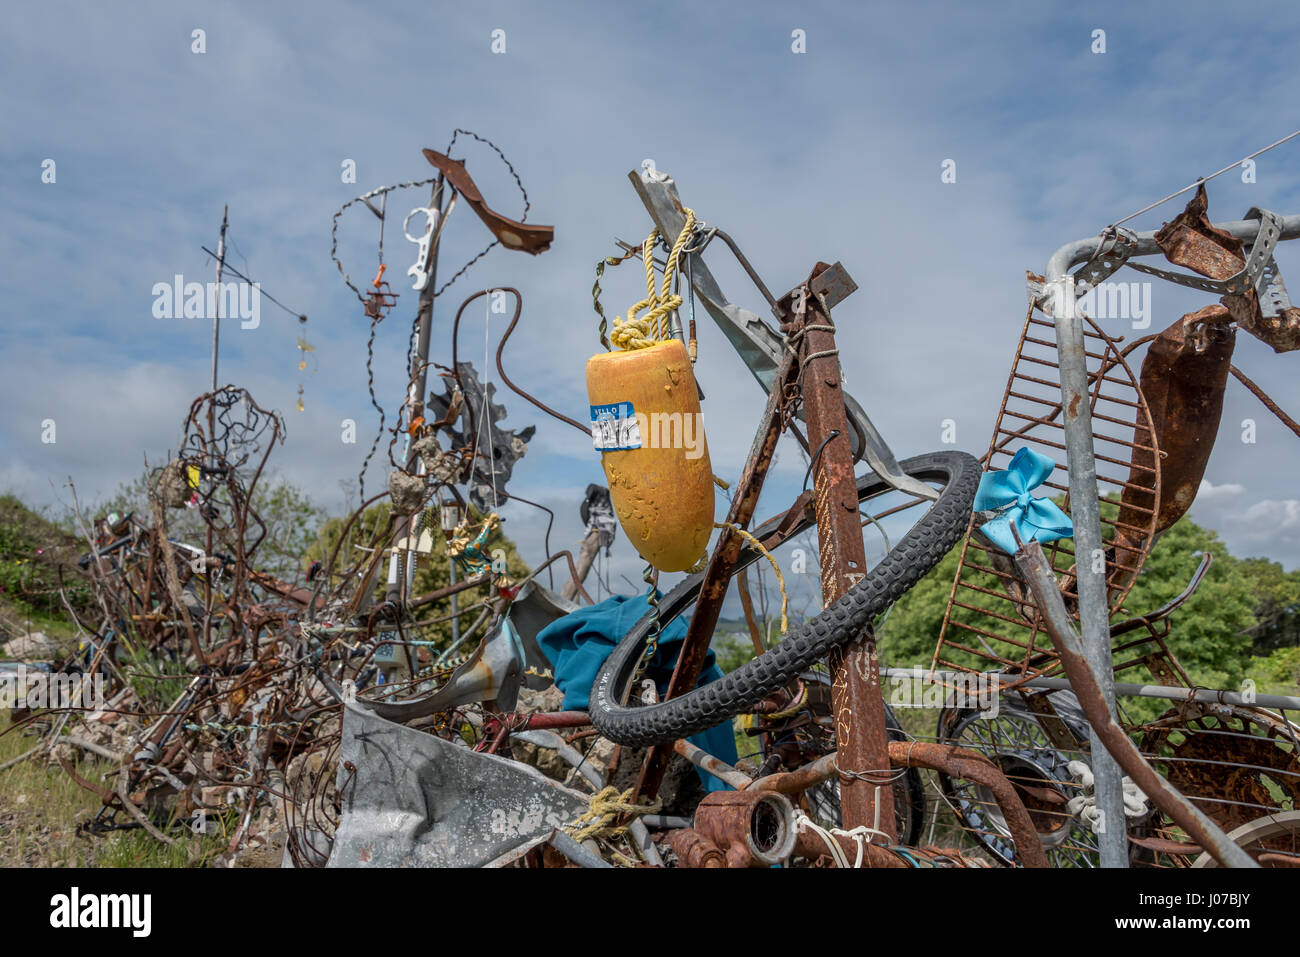 Upcycled ordures en plein air de sculptures d'art à Albany ampoule sur San Francsisco Bayshore Trail, avec flotteur jaune, métal rouillé, roue de bicyclette. Banque D'Images